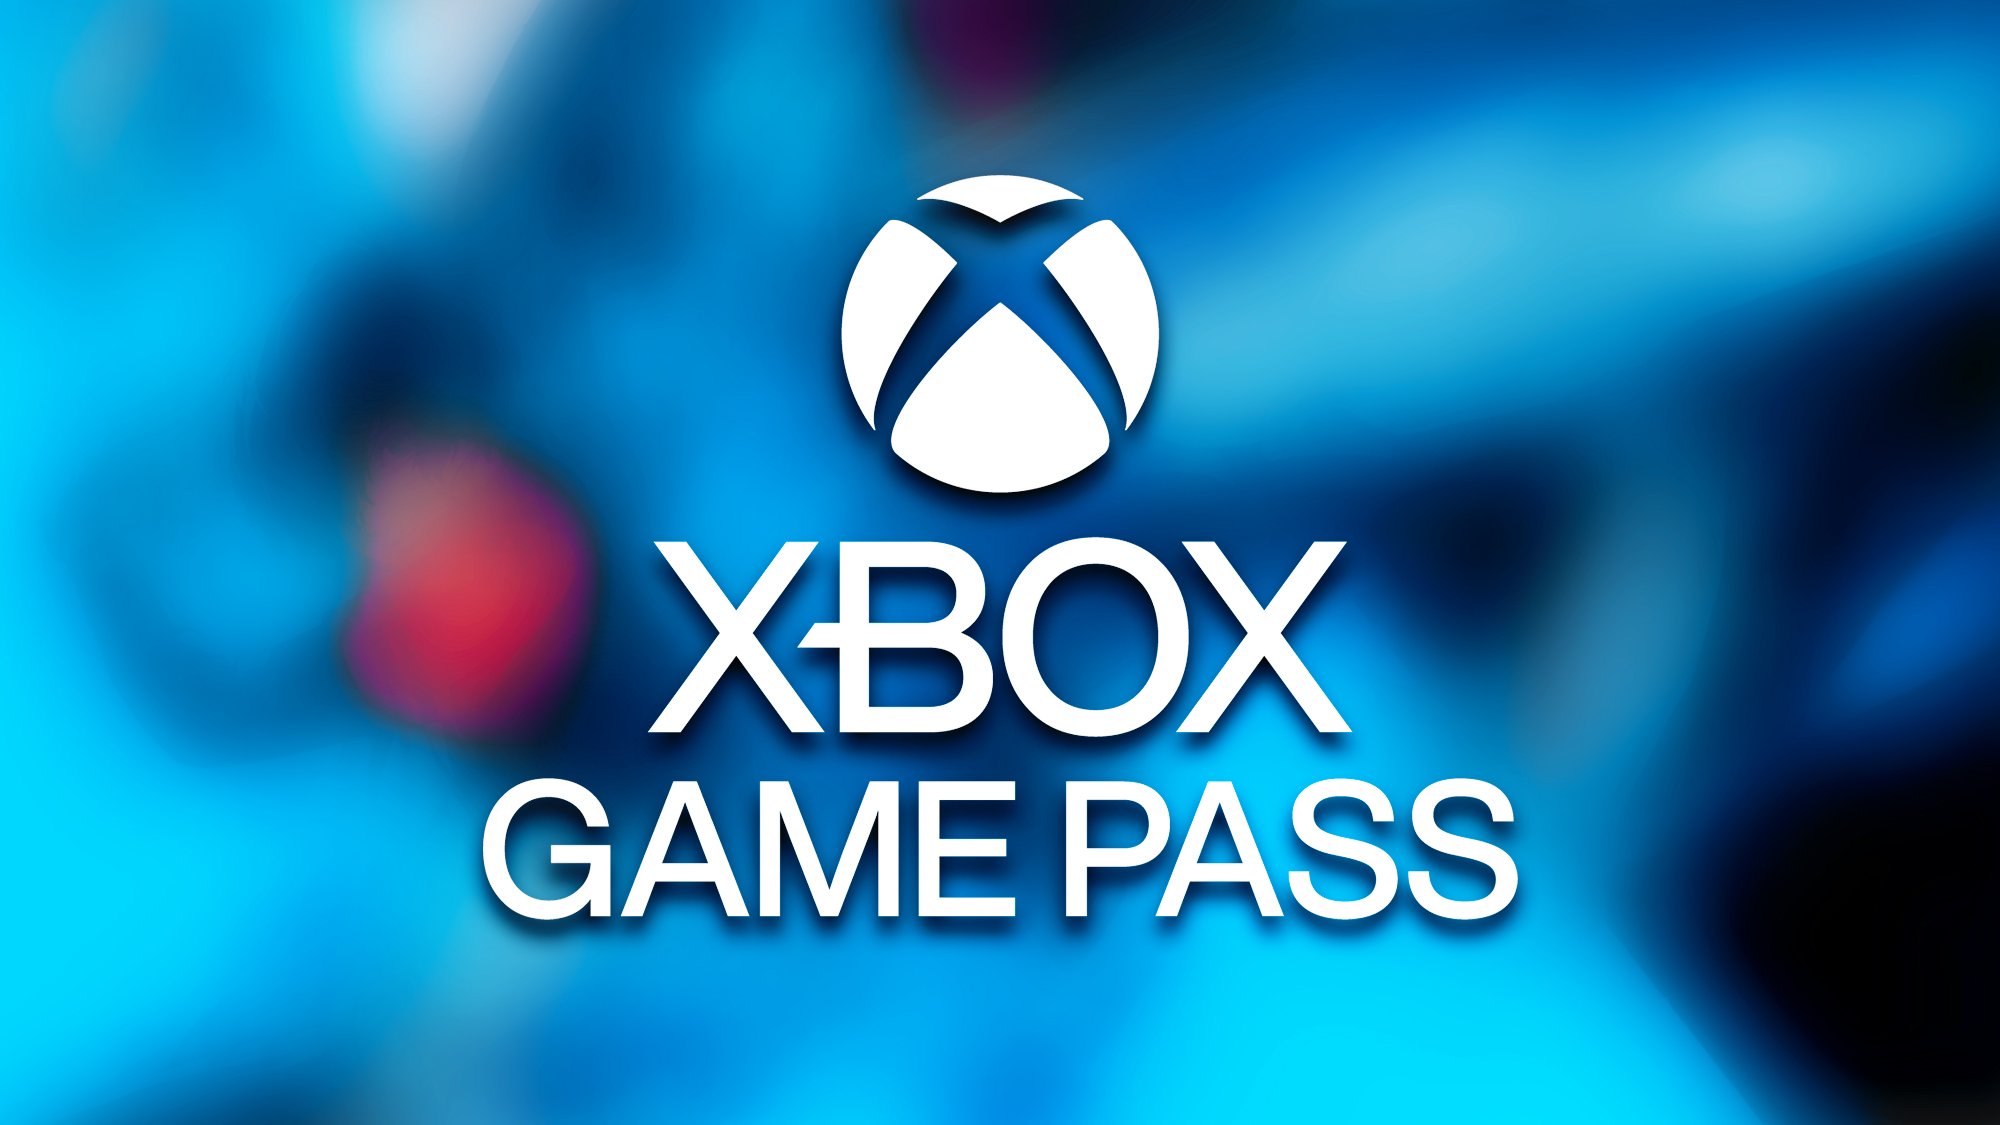 Le Xbox Game Pass régale encore certains avec de nouveaux avantages gratuits